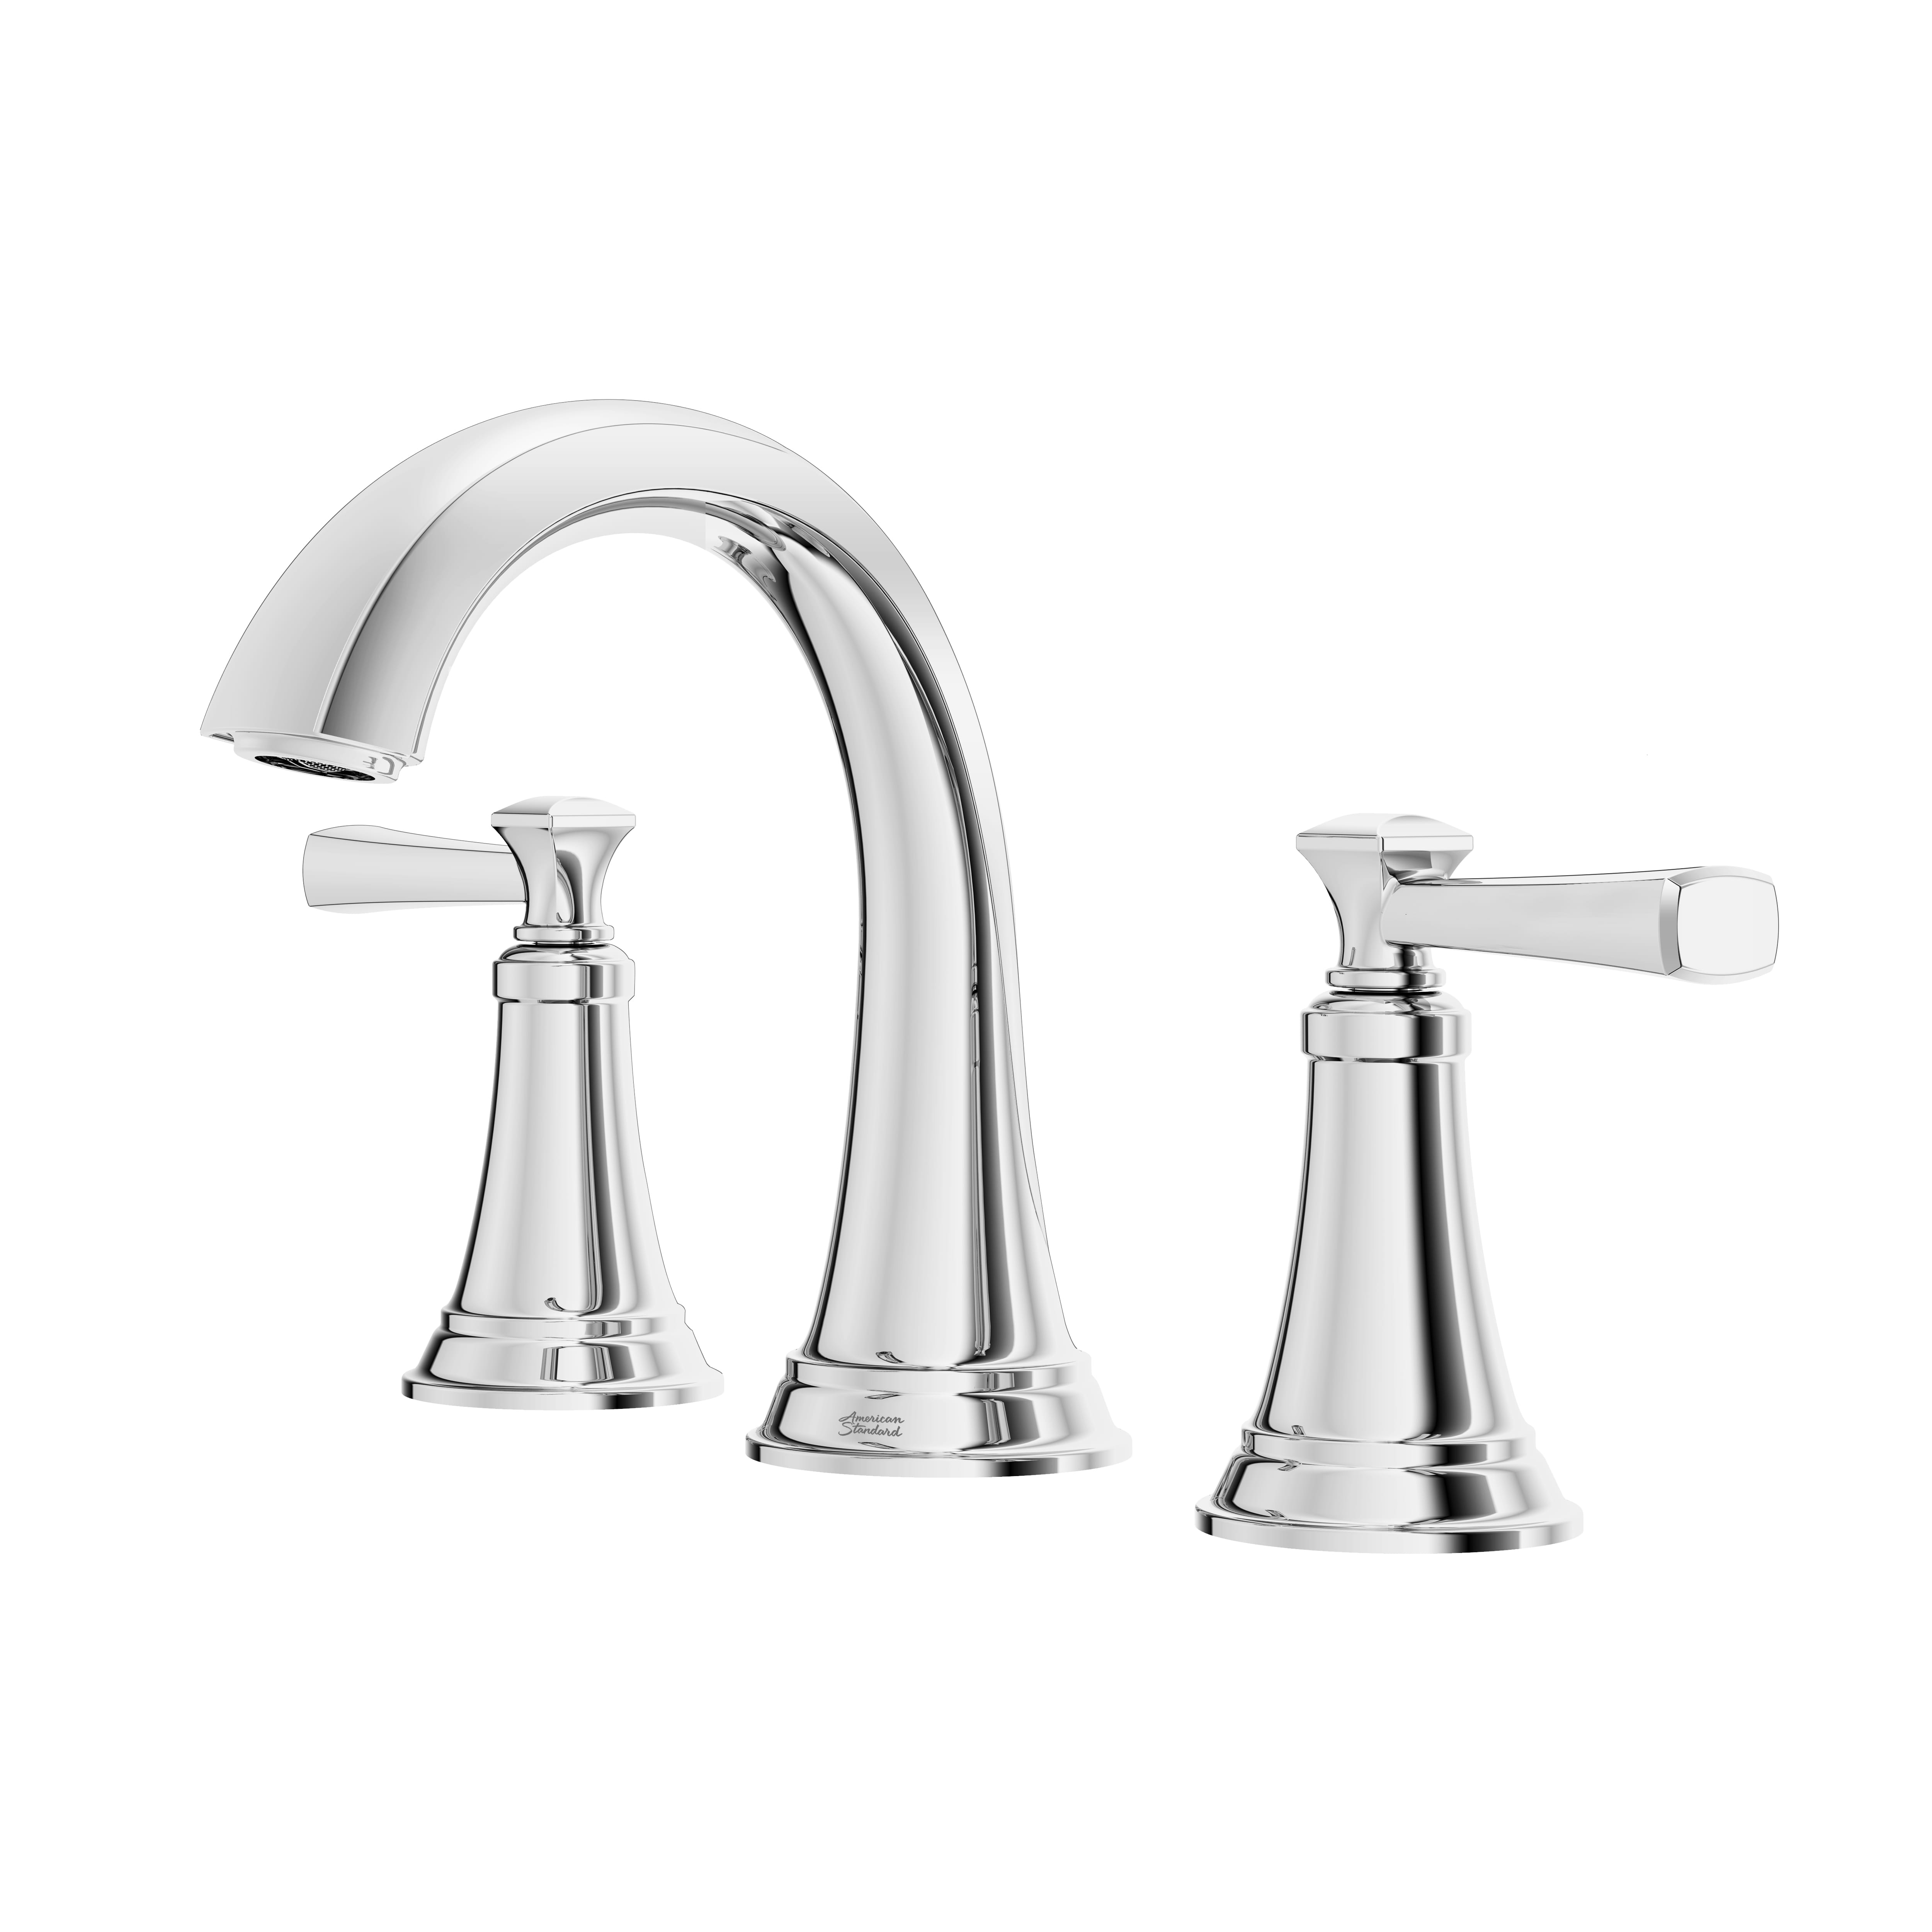 rumson® 8-inch widespread 2-handle bathroom faucet 1.2 gpm/4.5 l